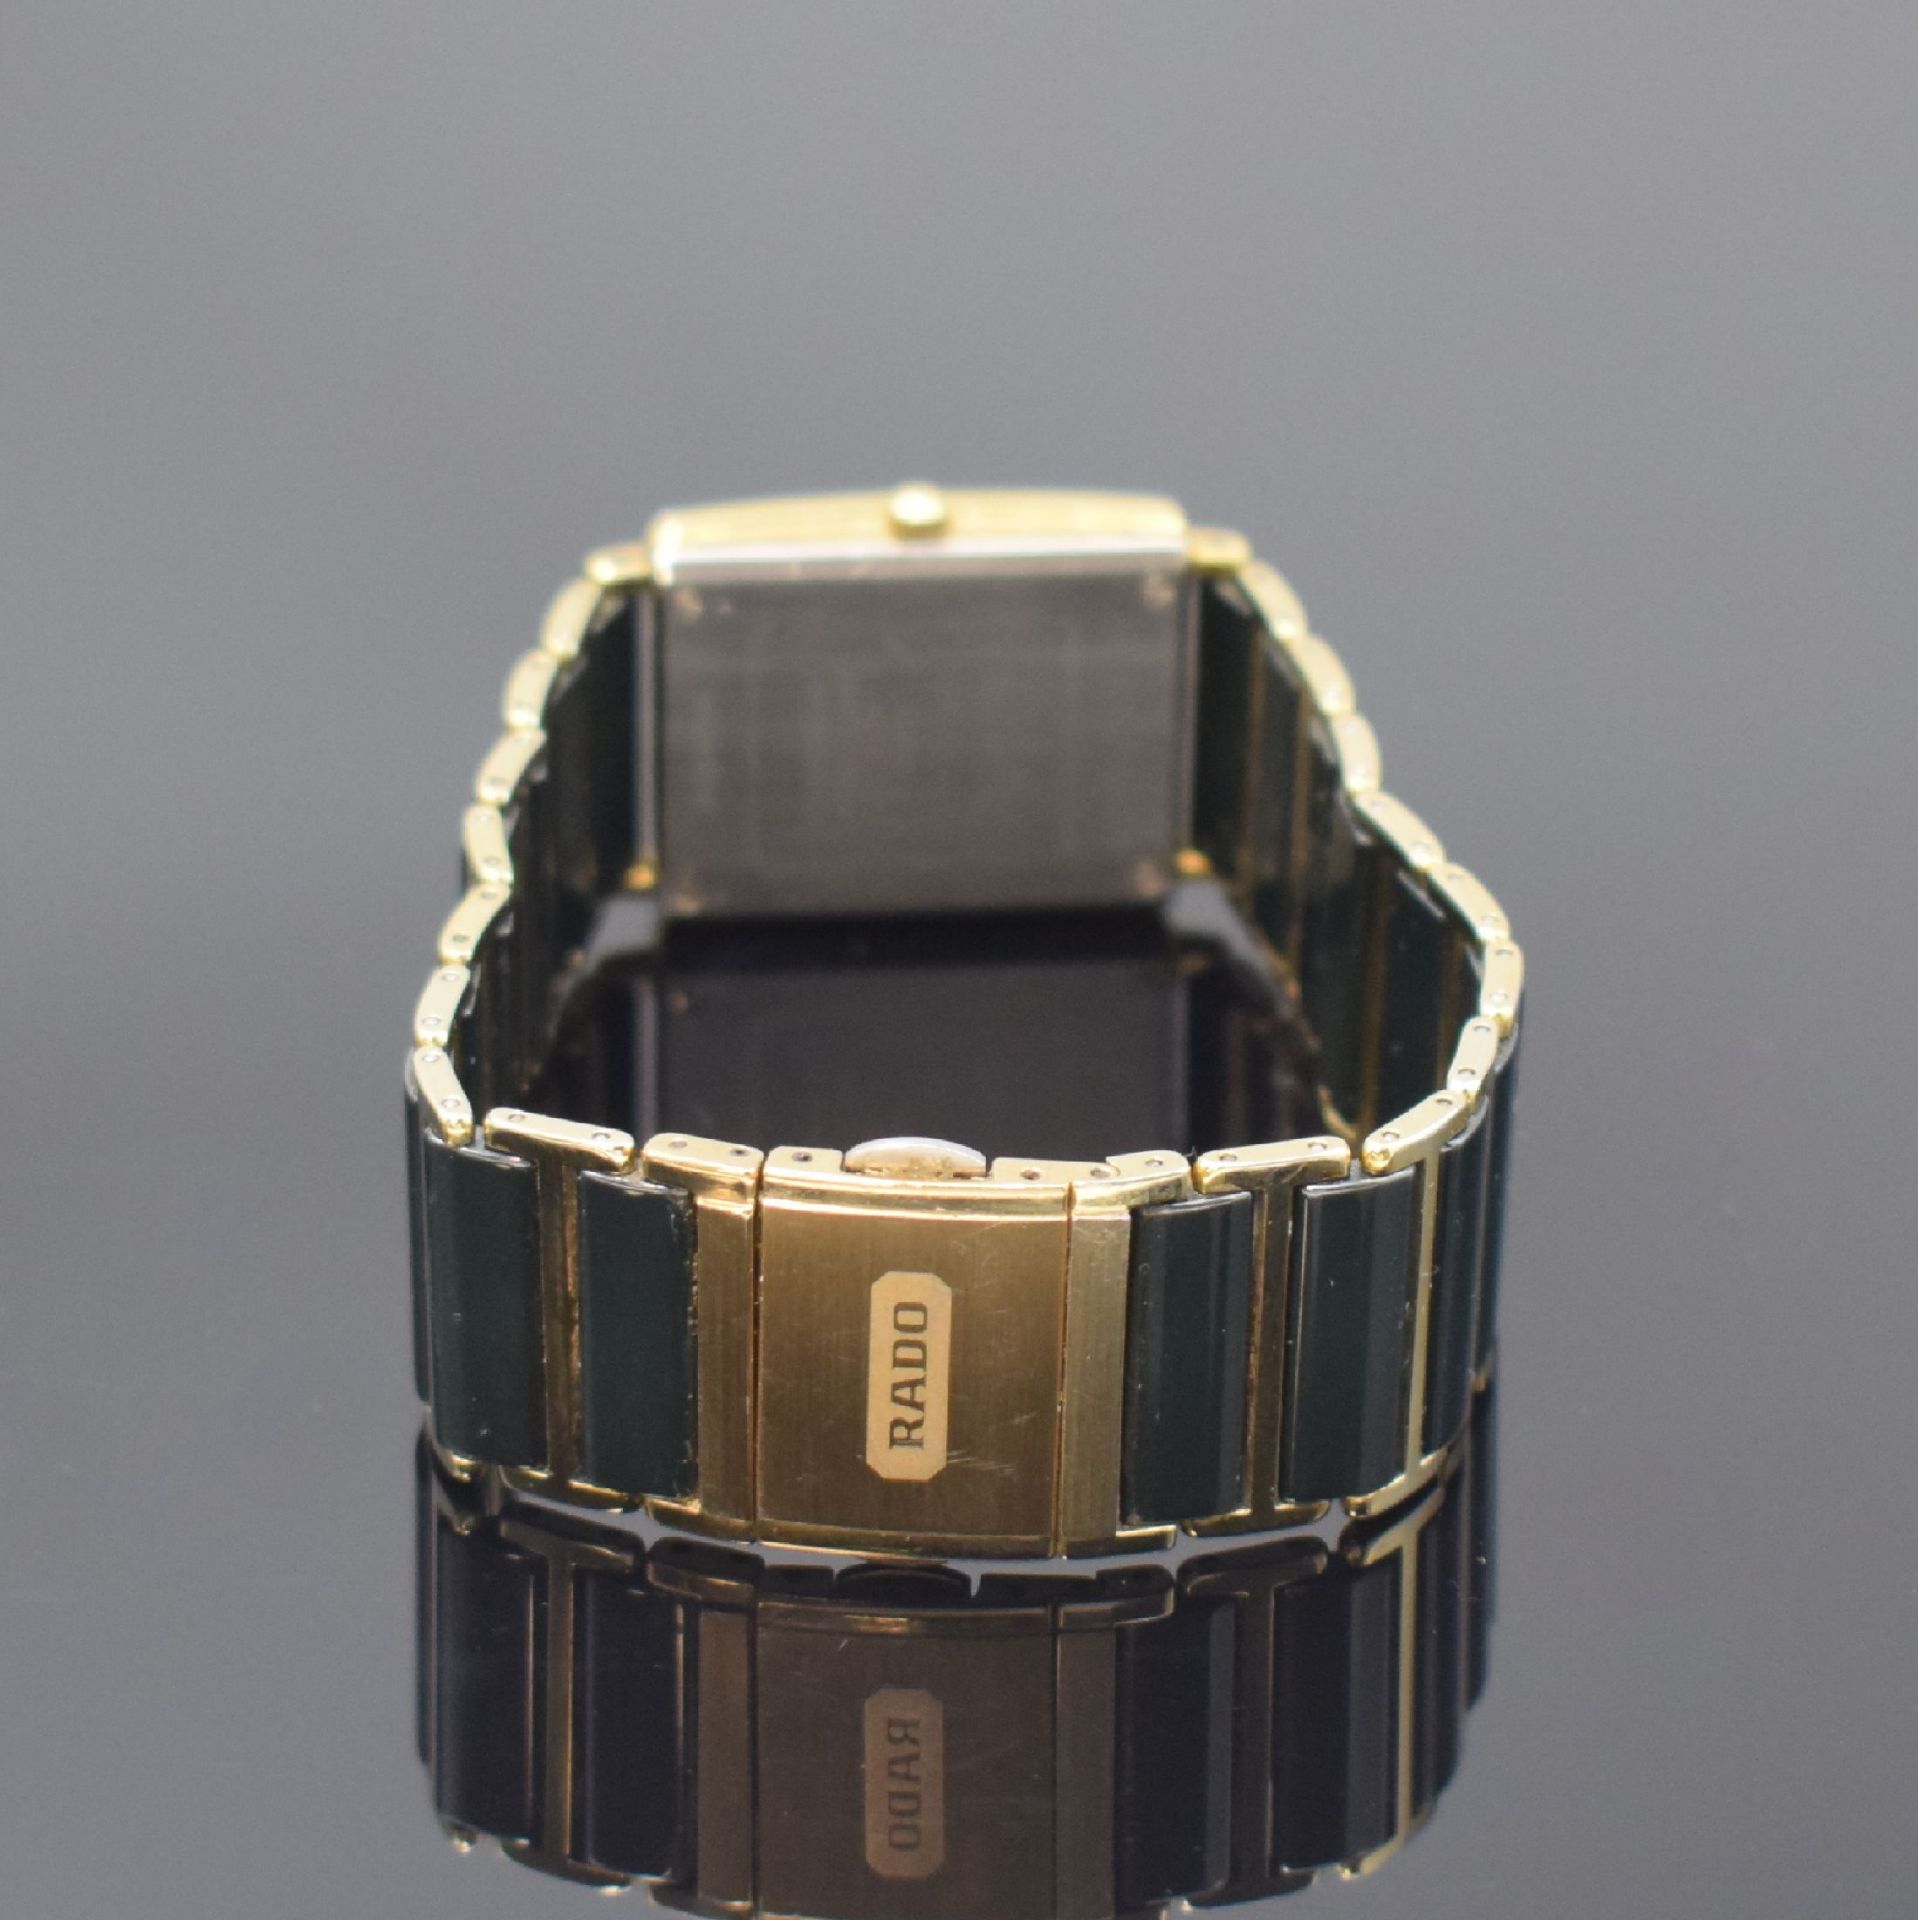 RADO Diastar Armbanduhr Referenz 160.0381.3, Schweiz um - Bild 3 aus 5